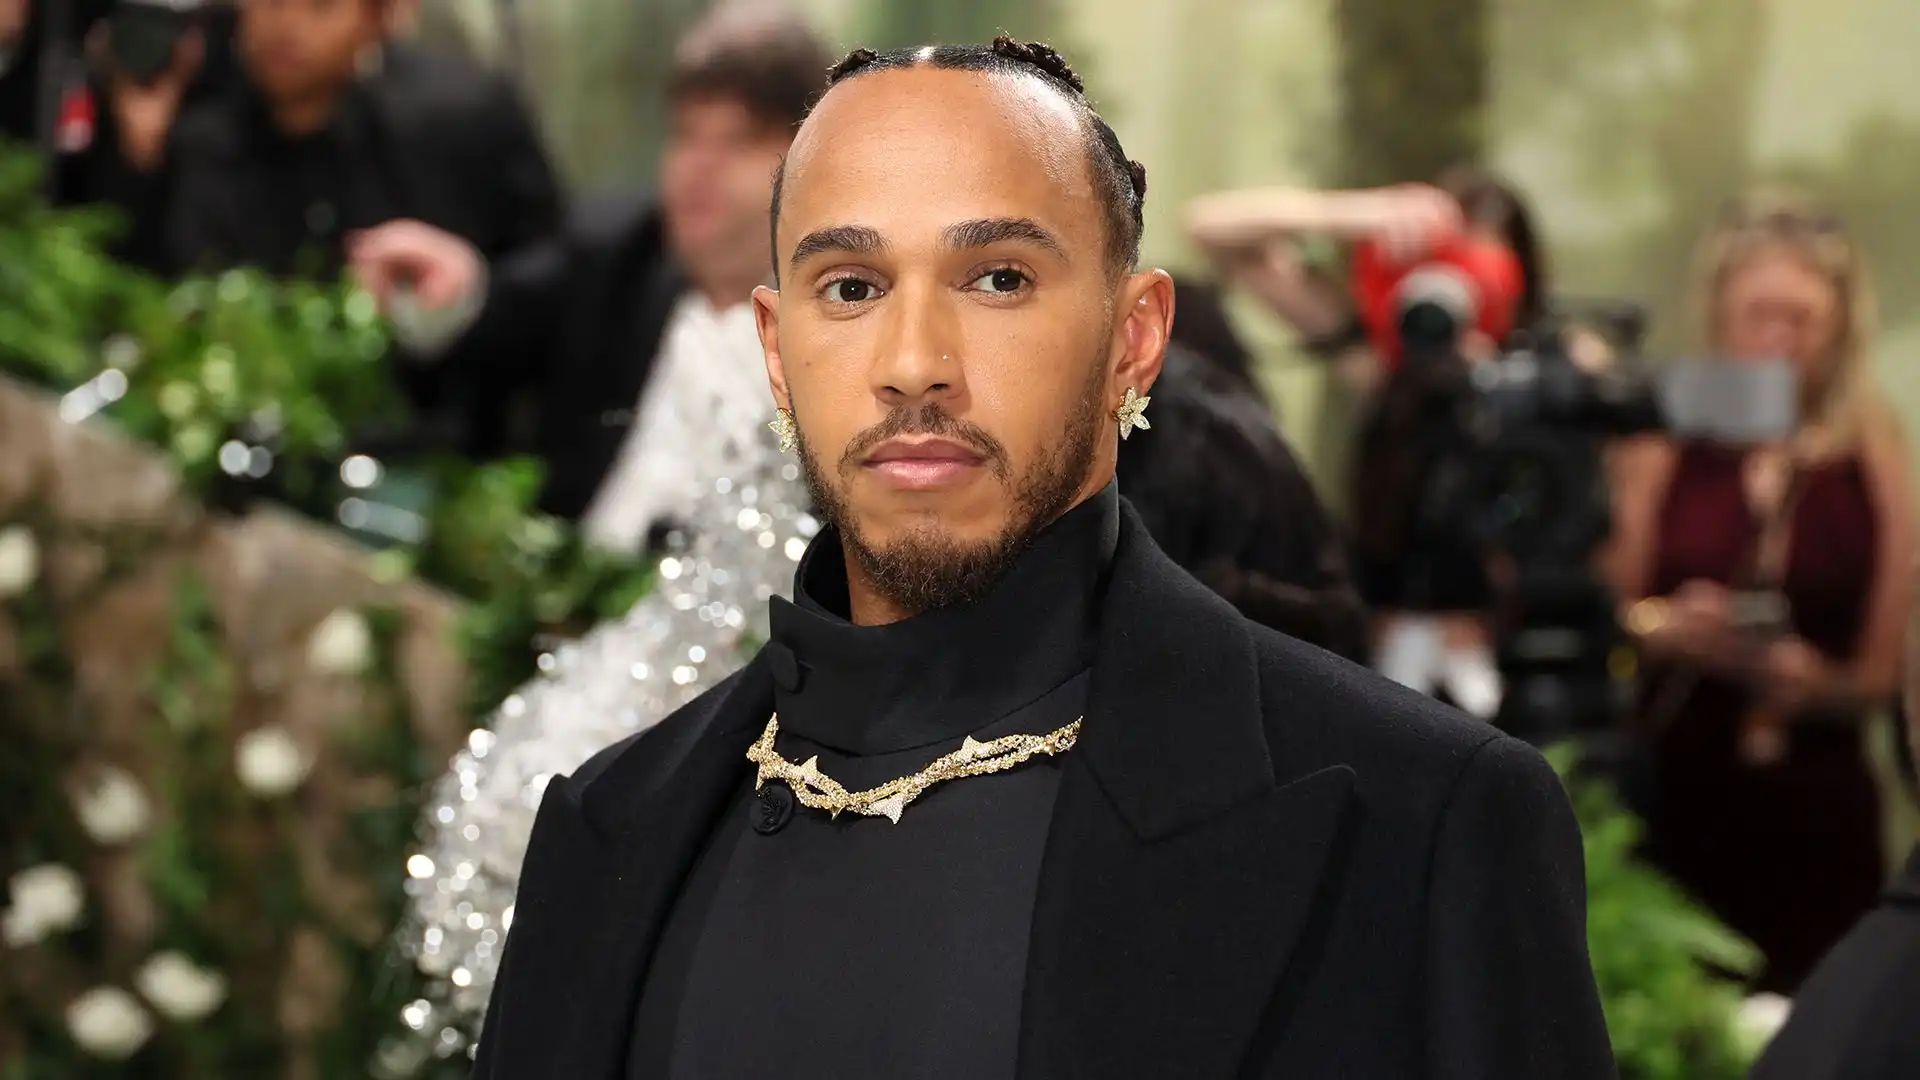 Hamilton ha sfilato sul red carpet insieme ad altre celebrità del mondo dello spettacolo